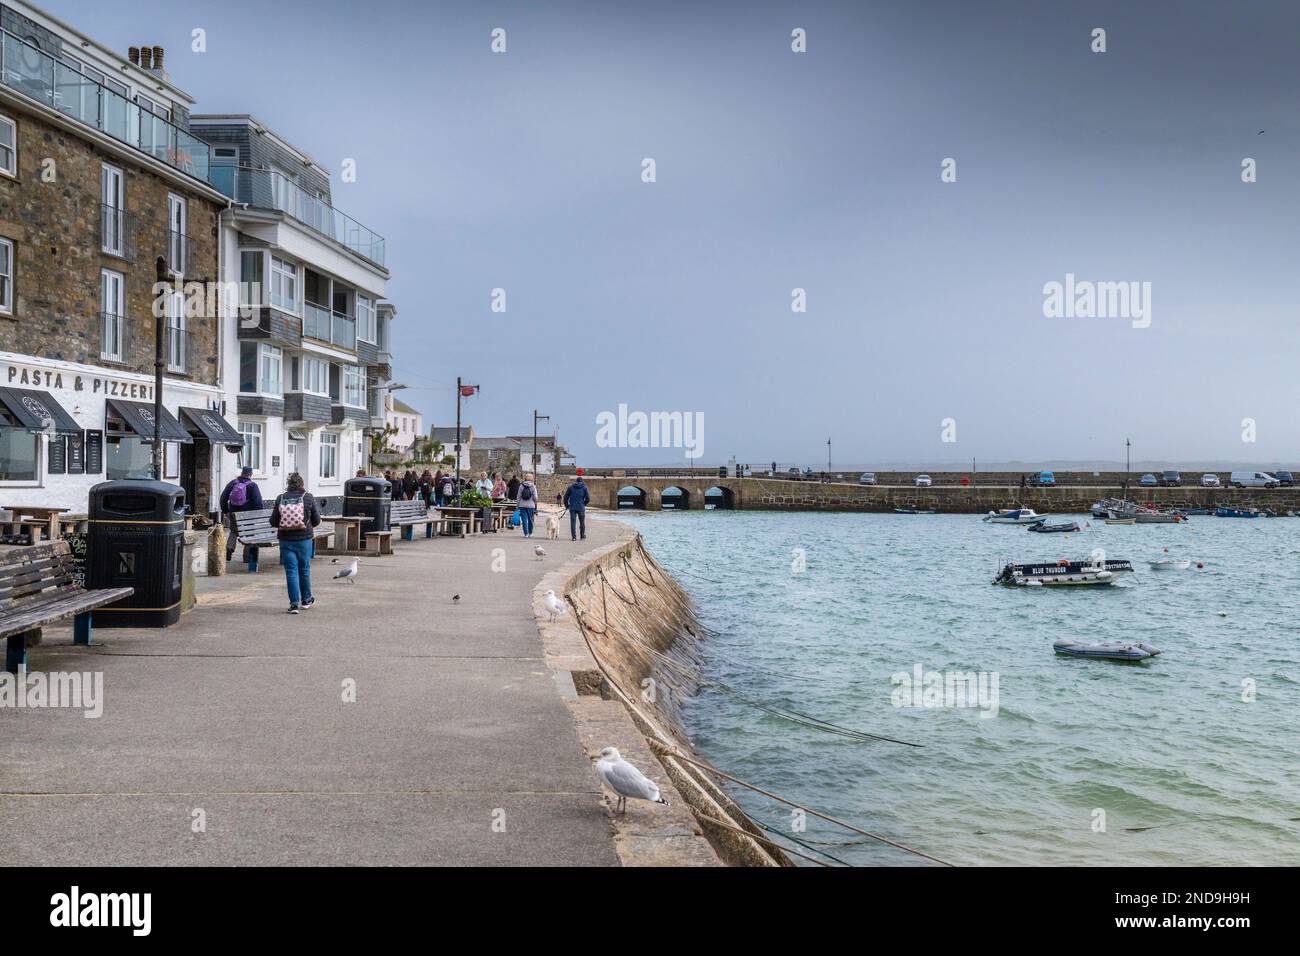 Wetter in Großbritannien. Besucher, die an der Wharf spazieren gehen, sind an einem kalten, erbärmlichen Tag in der historischen Küstenstadt St. Ives in Cornwall in England im Vereinigten Königreich. Stockfoto